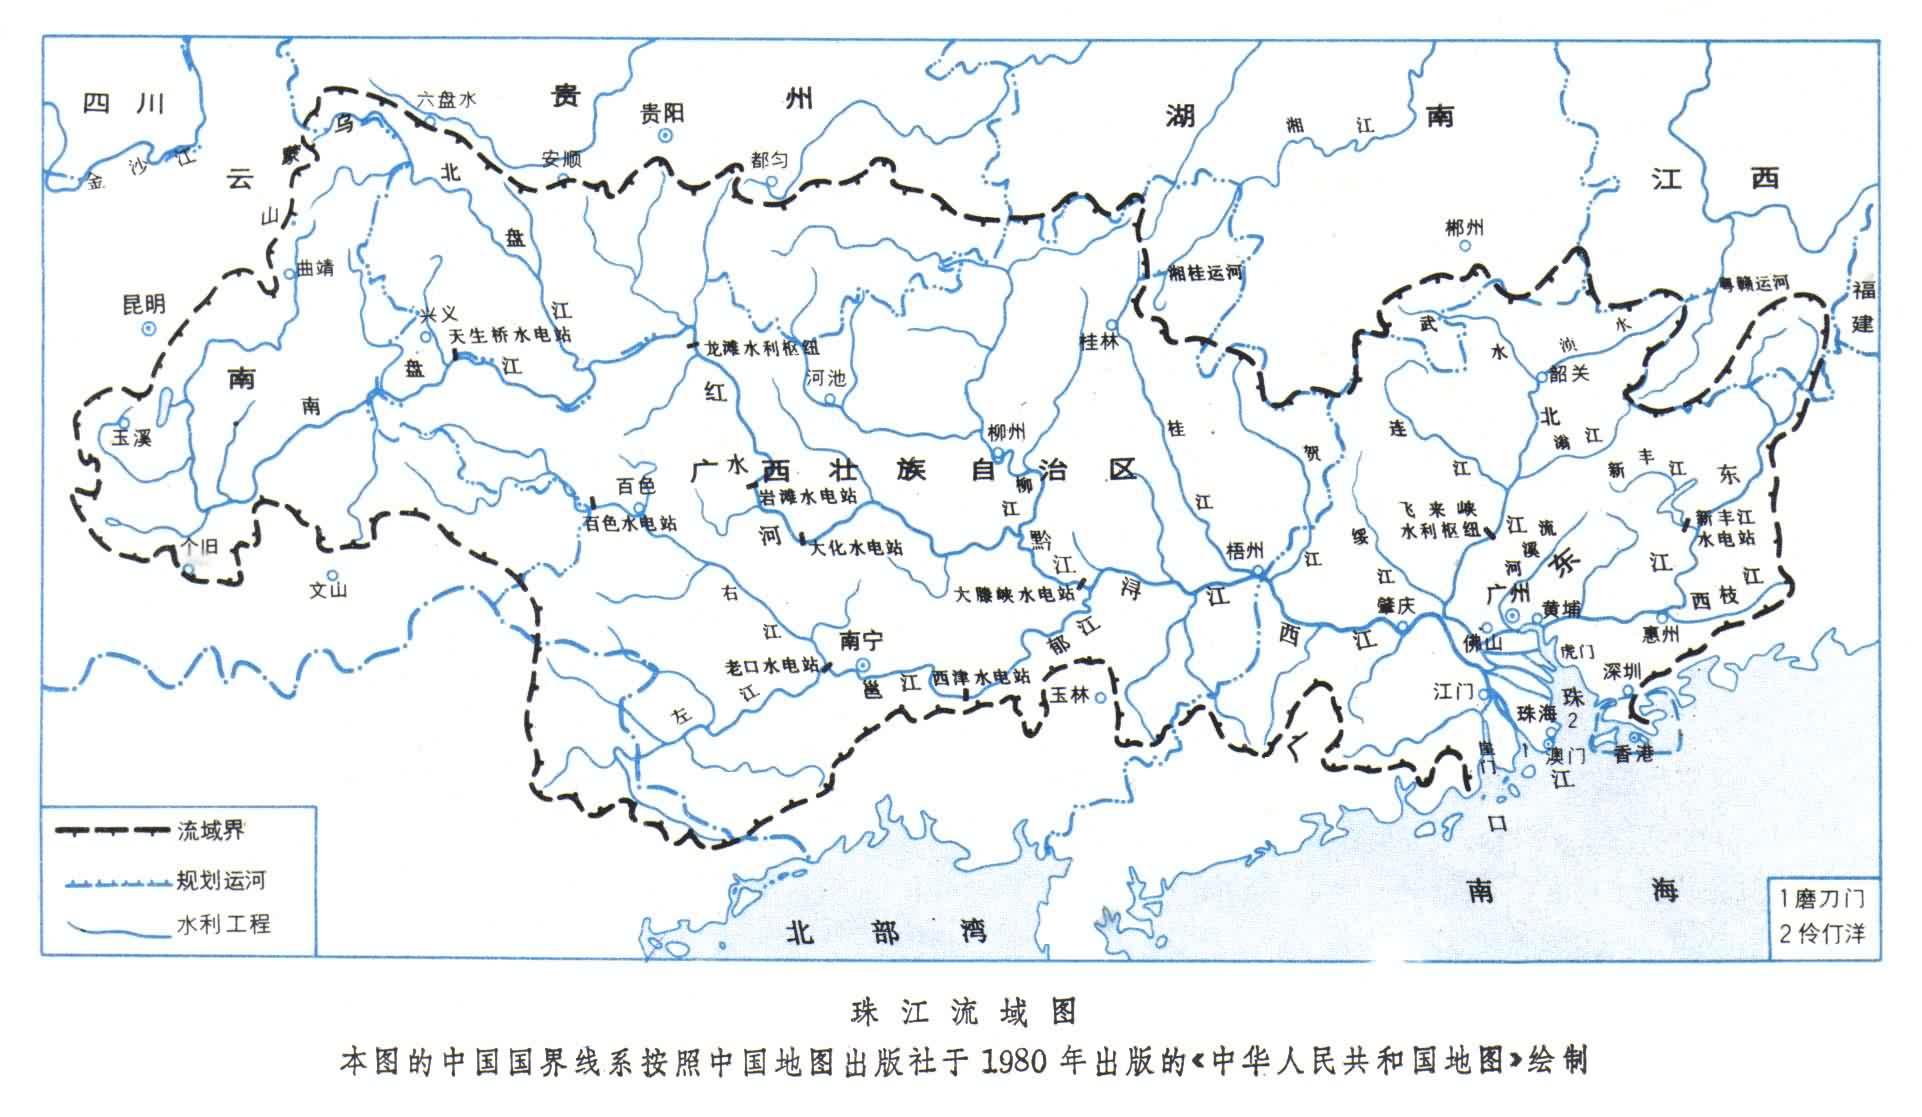 珠江流经哪些省份图片